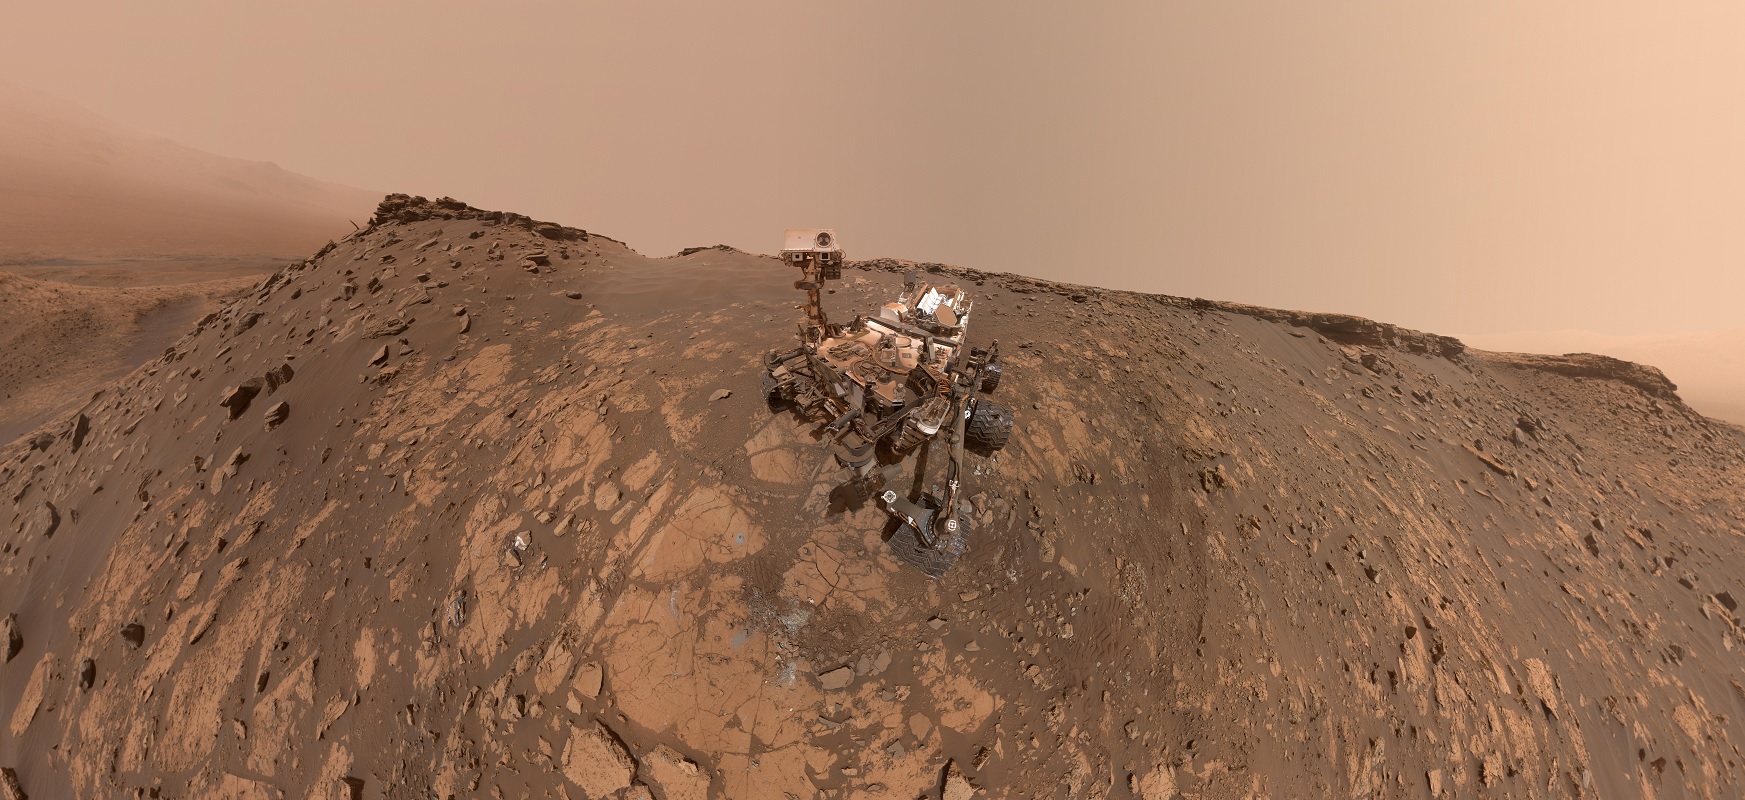 Curiosity rover bezala, bere buruari egin zion. Grabaketa bat dago